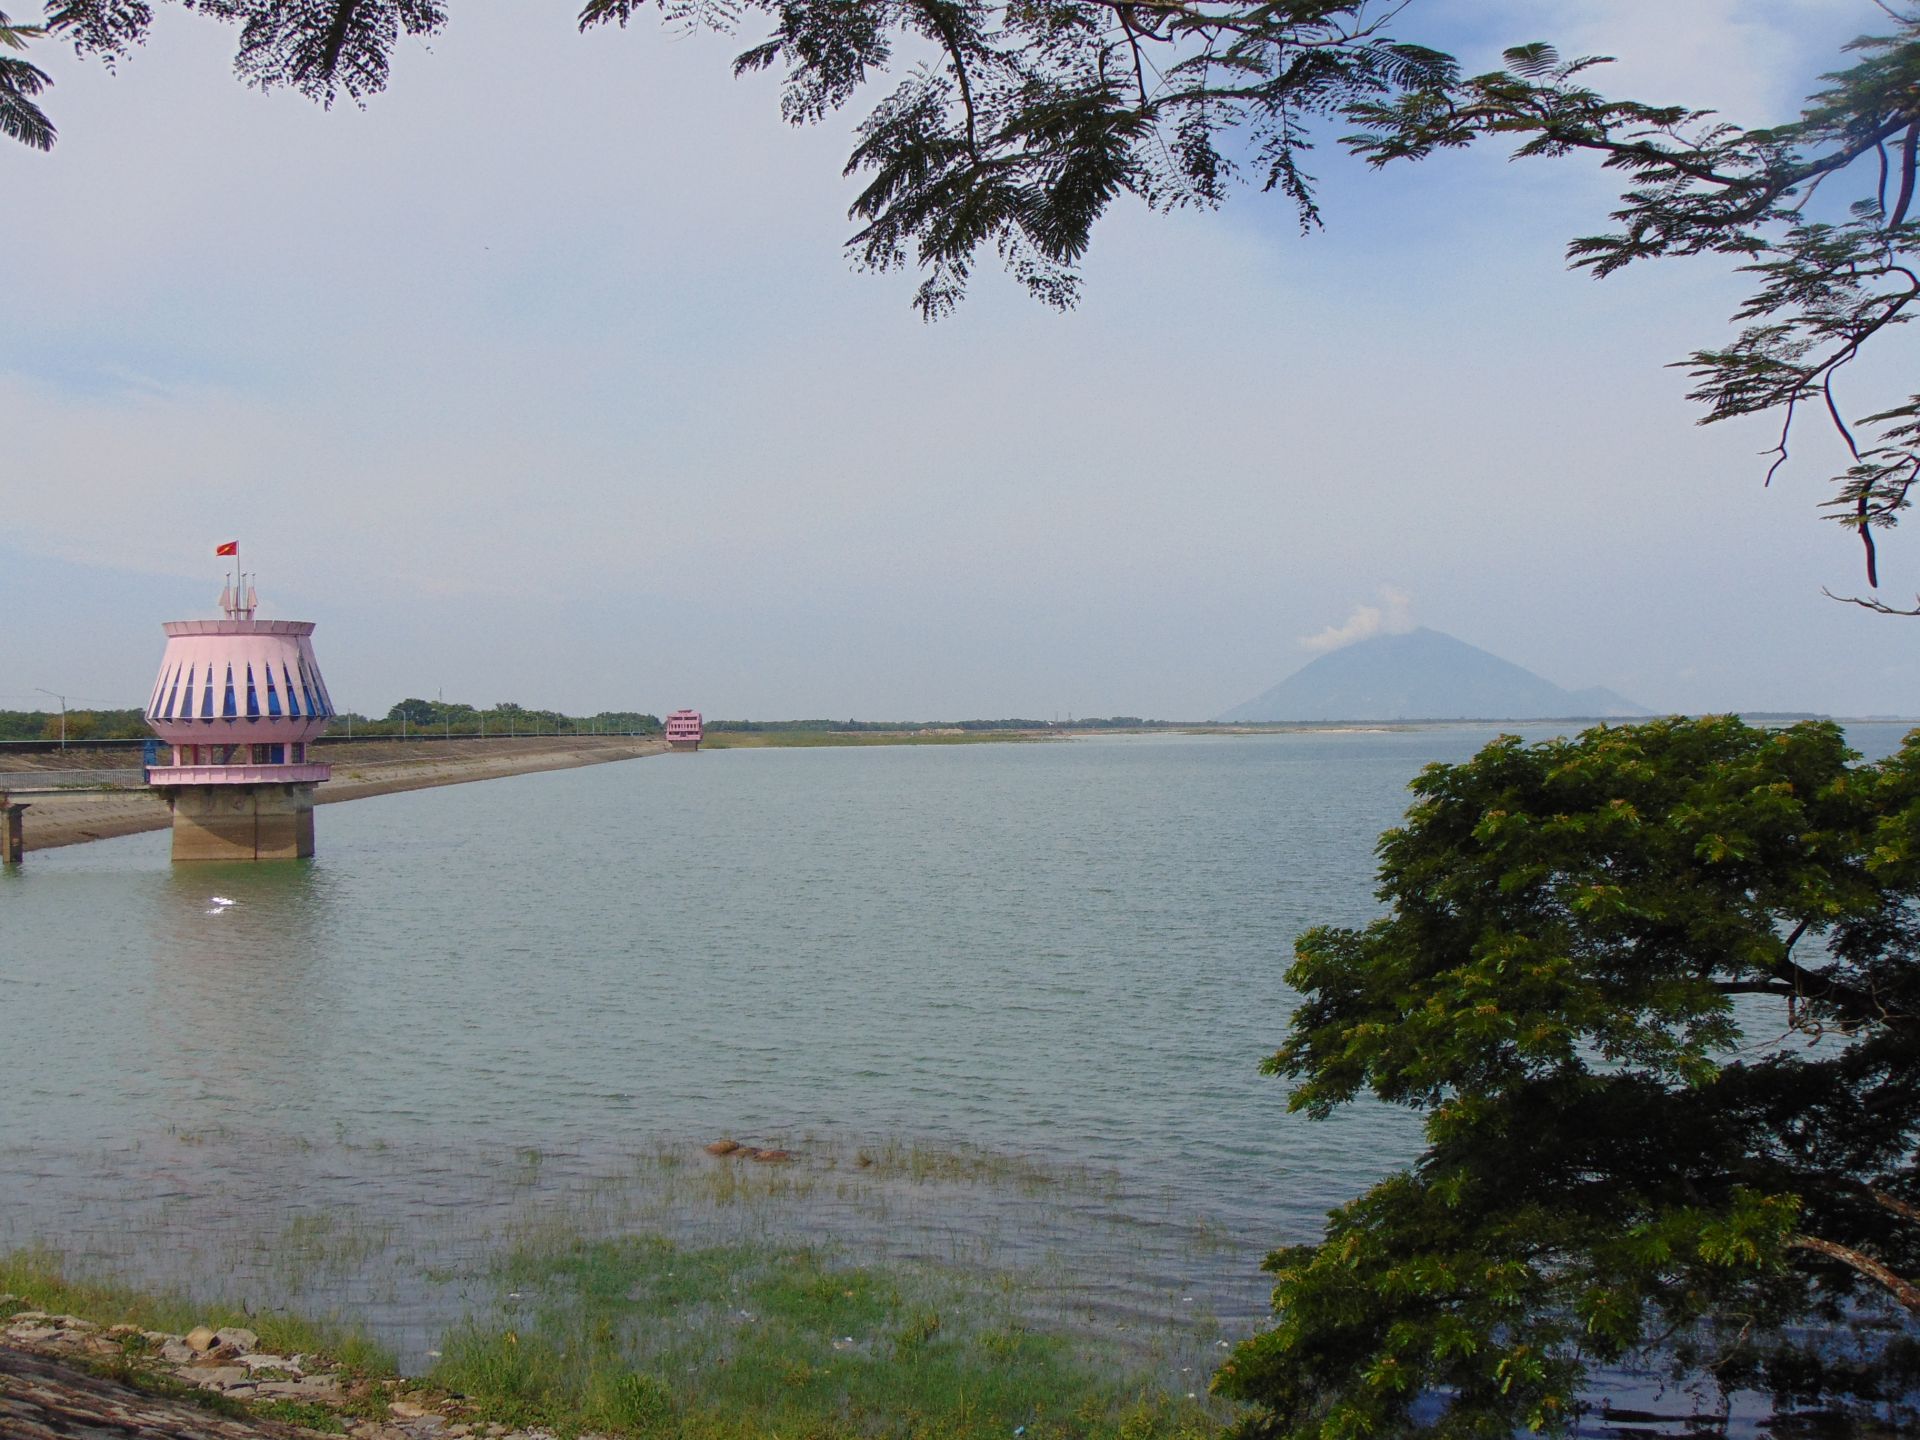 Đi hết núi nào ở Tây Ninh là sẽ tới hồ Dầu Tiếng- hồ thuỷ lợi lớn nhất miền Nam? - Ảnh 2.